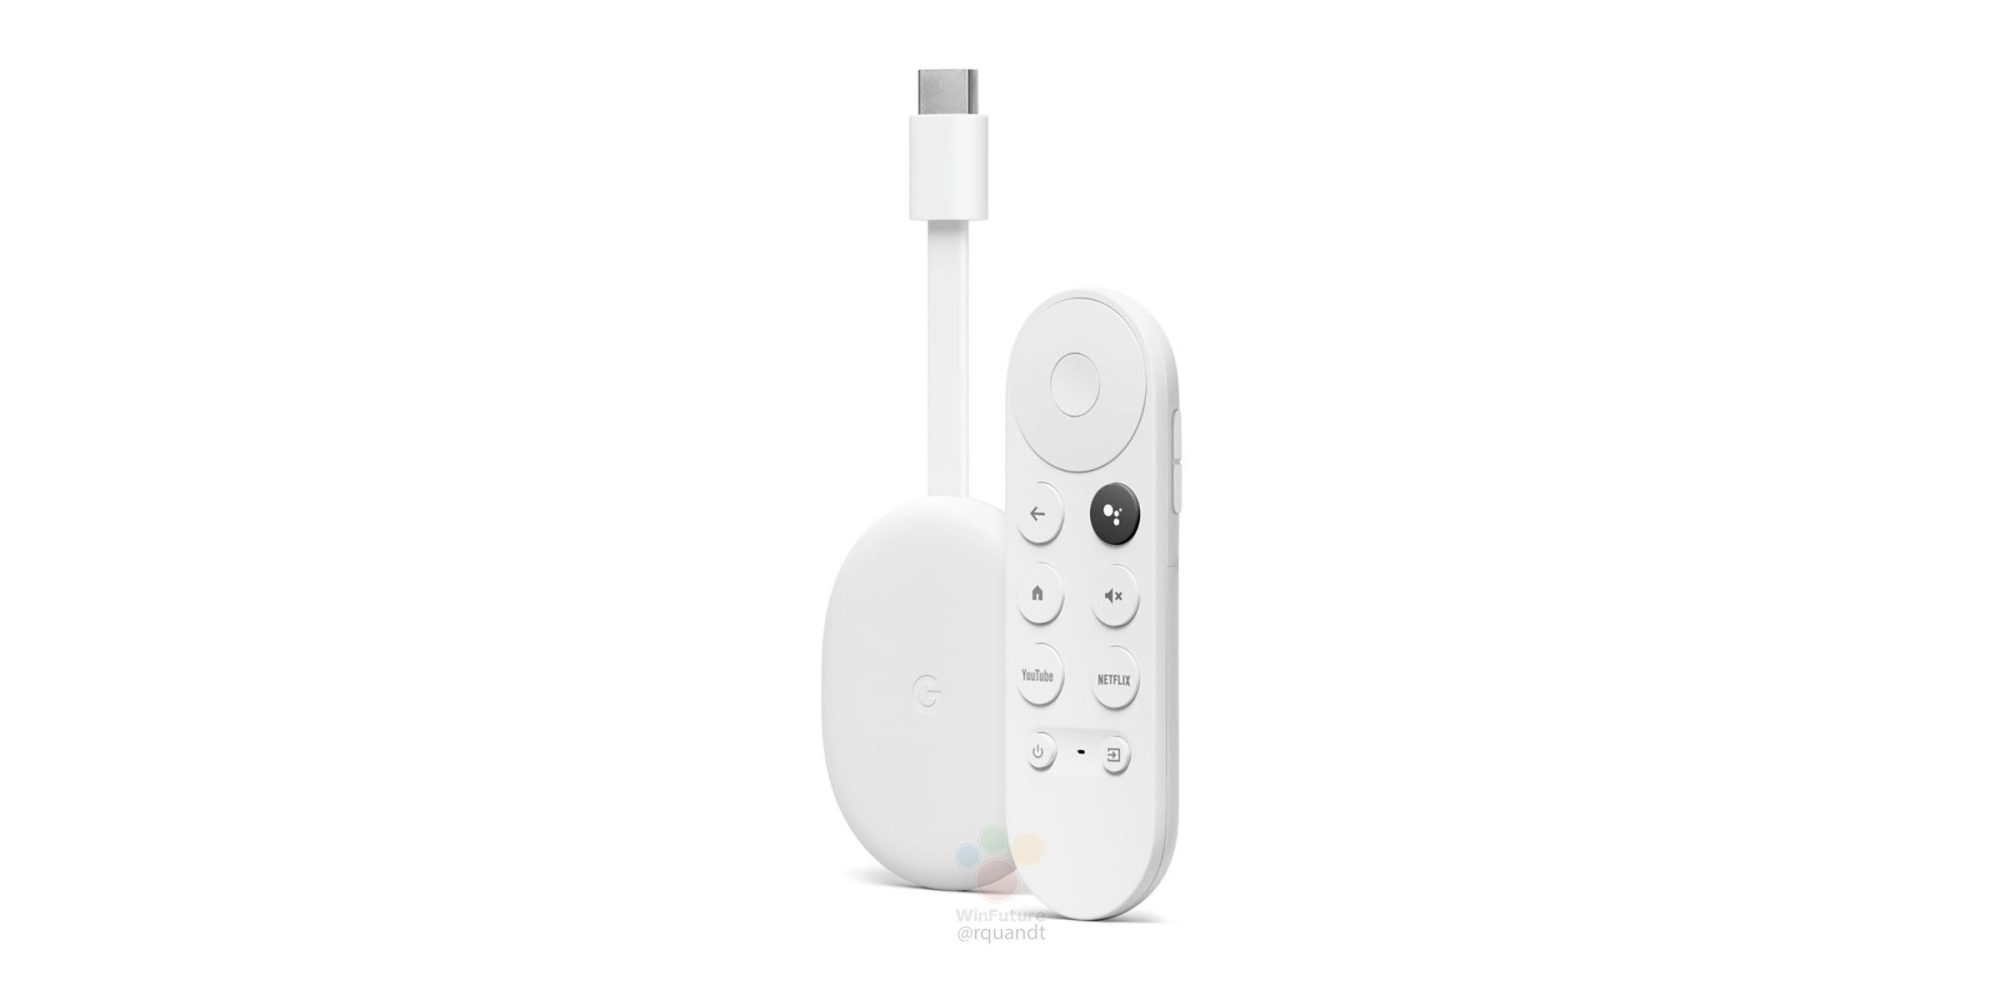 Le futur Chromecast Android TV de Google se montre un peu plus, avec sa télécommande